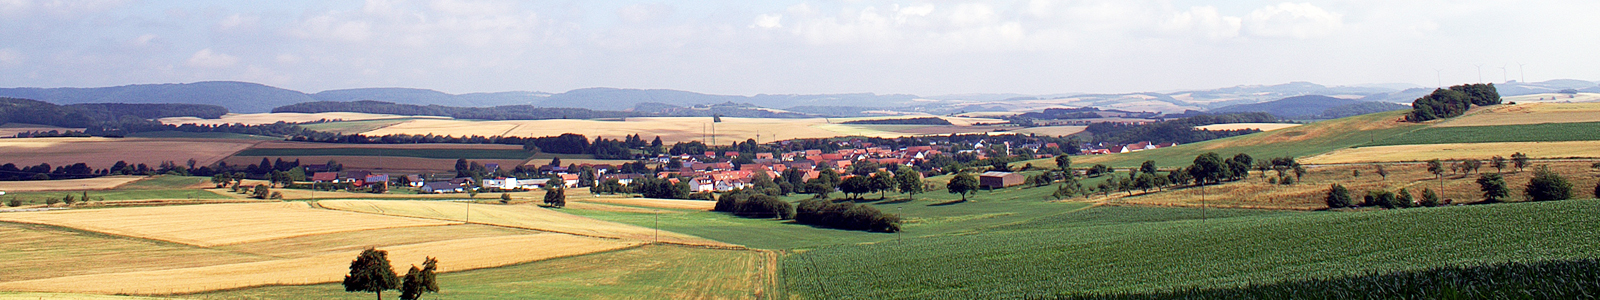 Weitläufiges Landschaftsbild mit Dorf, Hügeln und Feldern ©Feuerbach